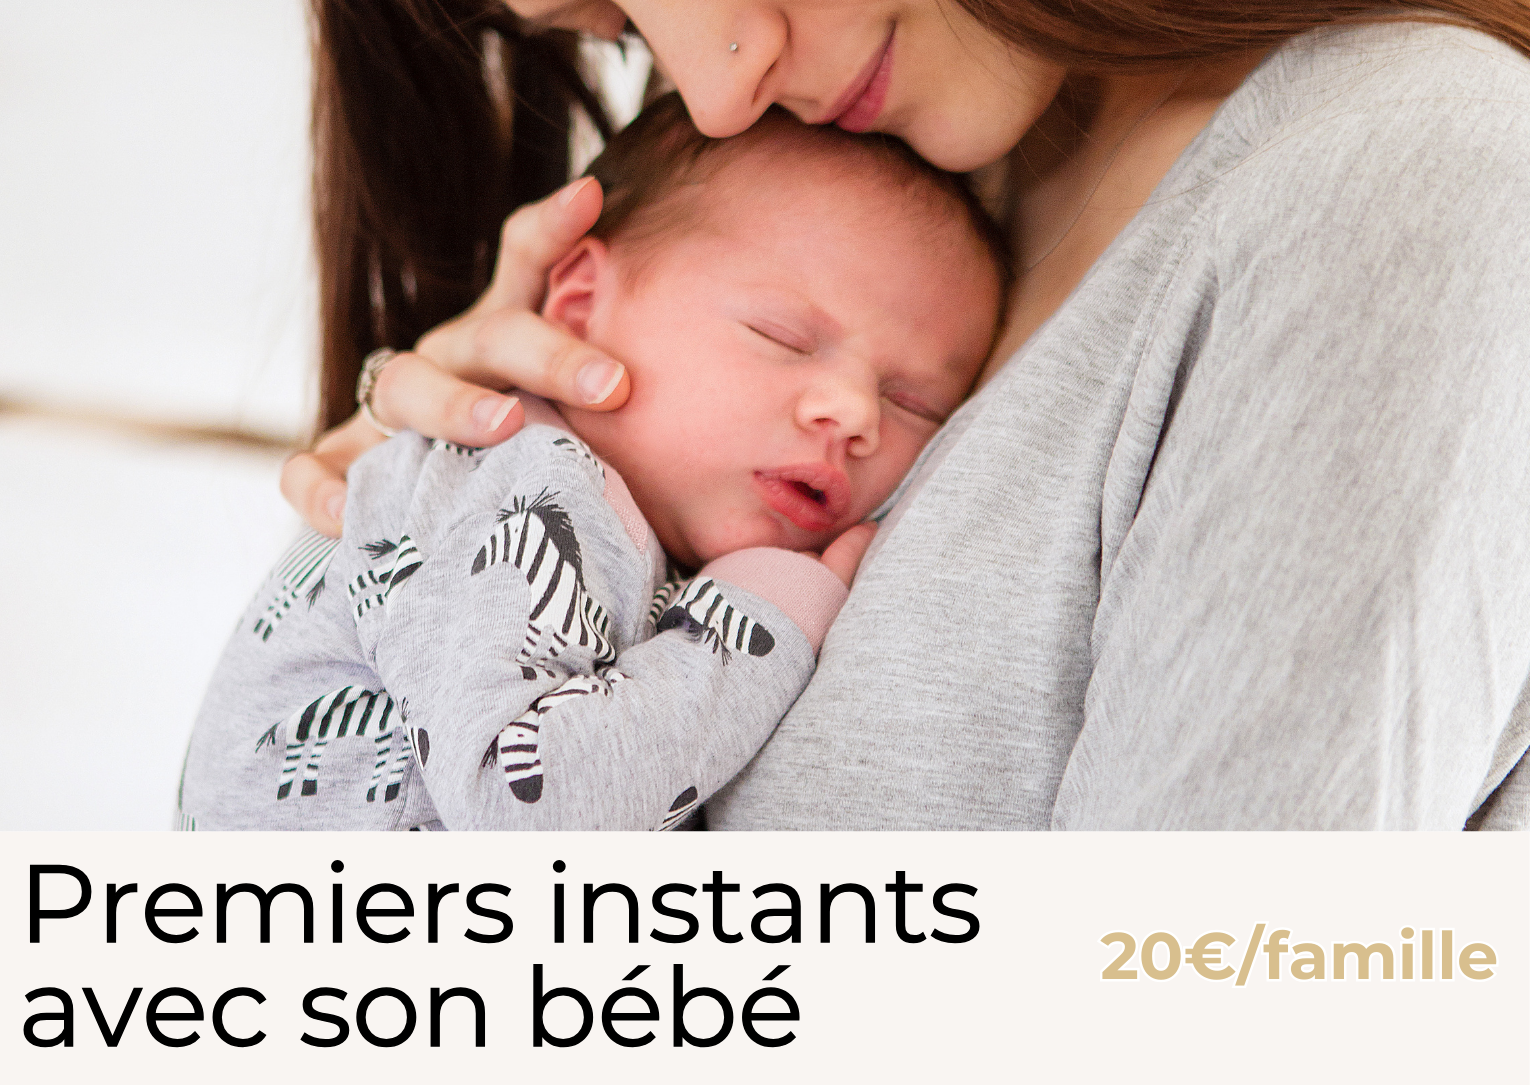 atelier premiers instants avec bébé, bébé contre son parent, tarif de l'atelier 20 euros par famille